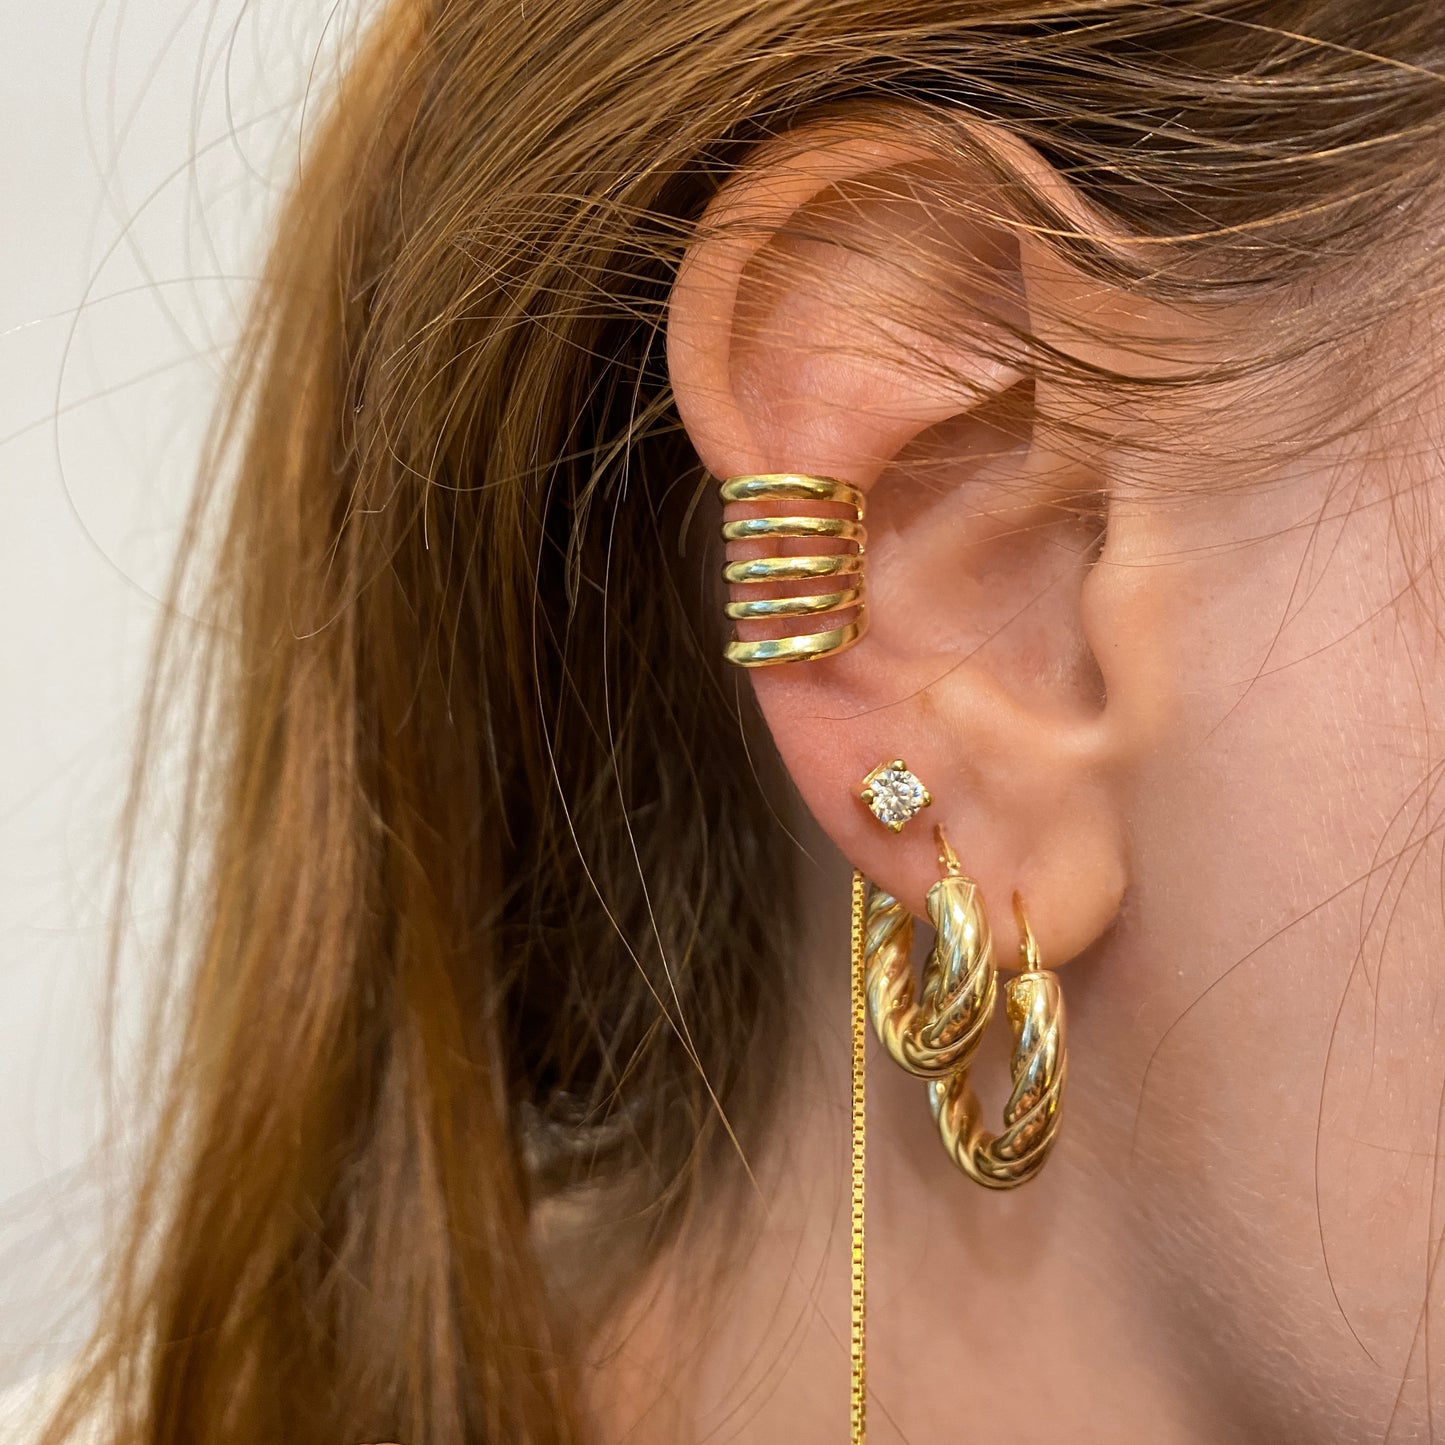 orecchini dorati in argento 925 minimal con orecchino a cascata con zirconi, earcuff dorato in argento 925